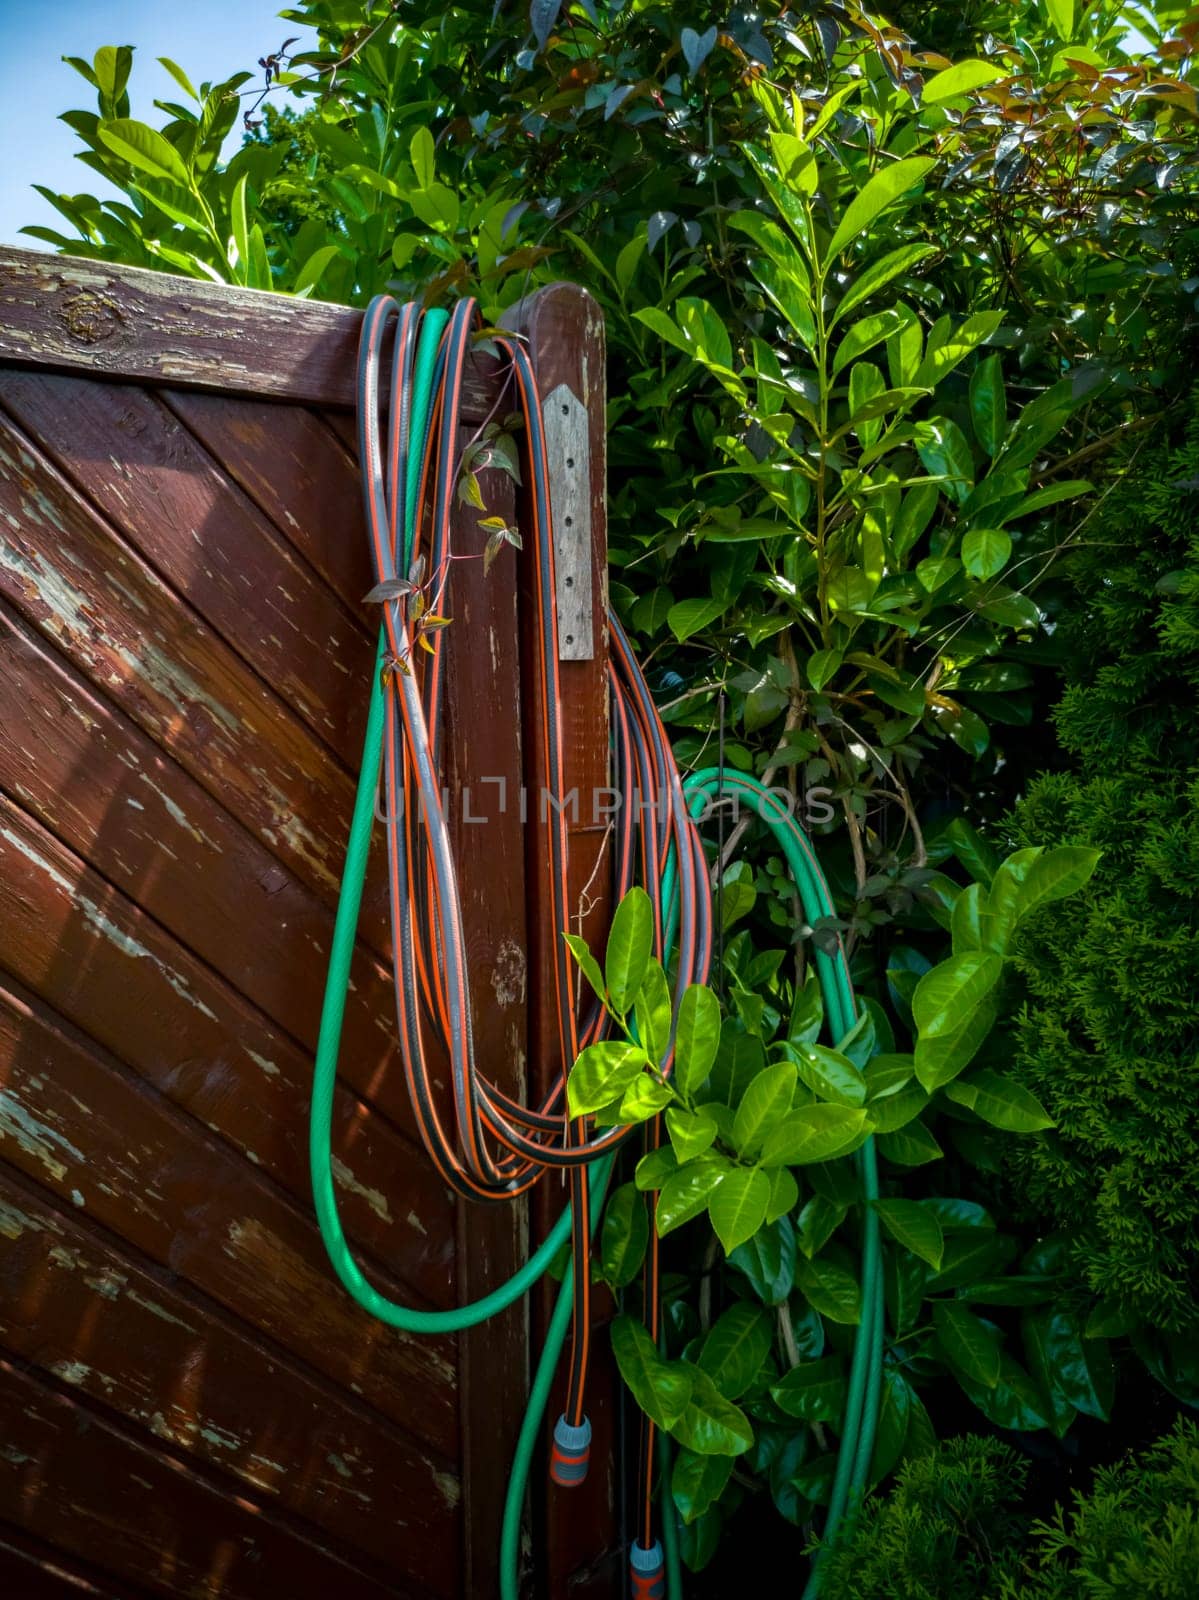 Hose hanging over wooden garden fence.